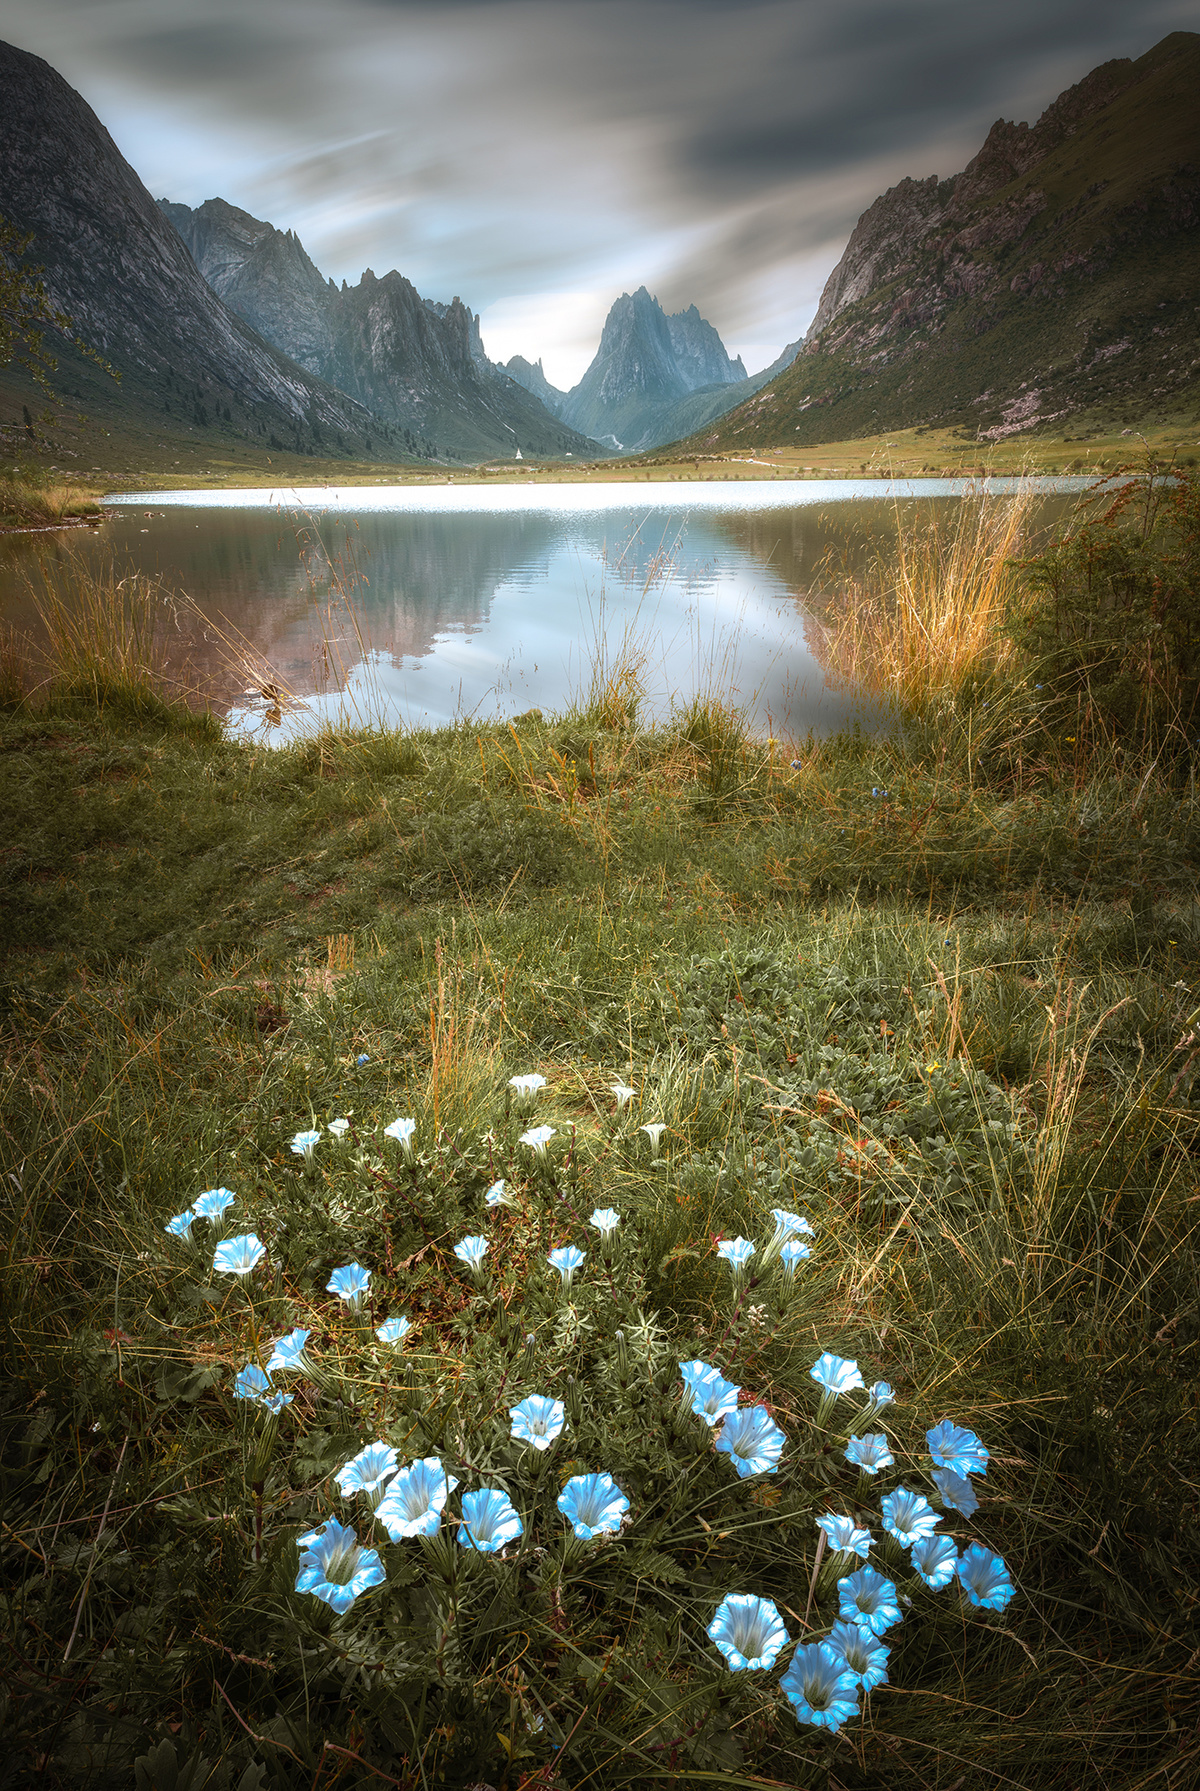 湖边山上的草丛中开满了蓝色花朵